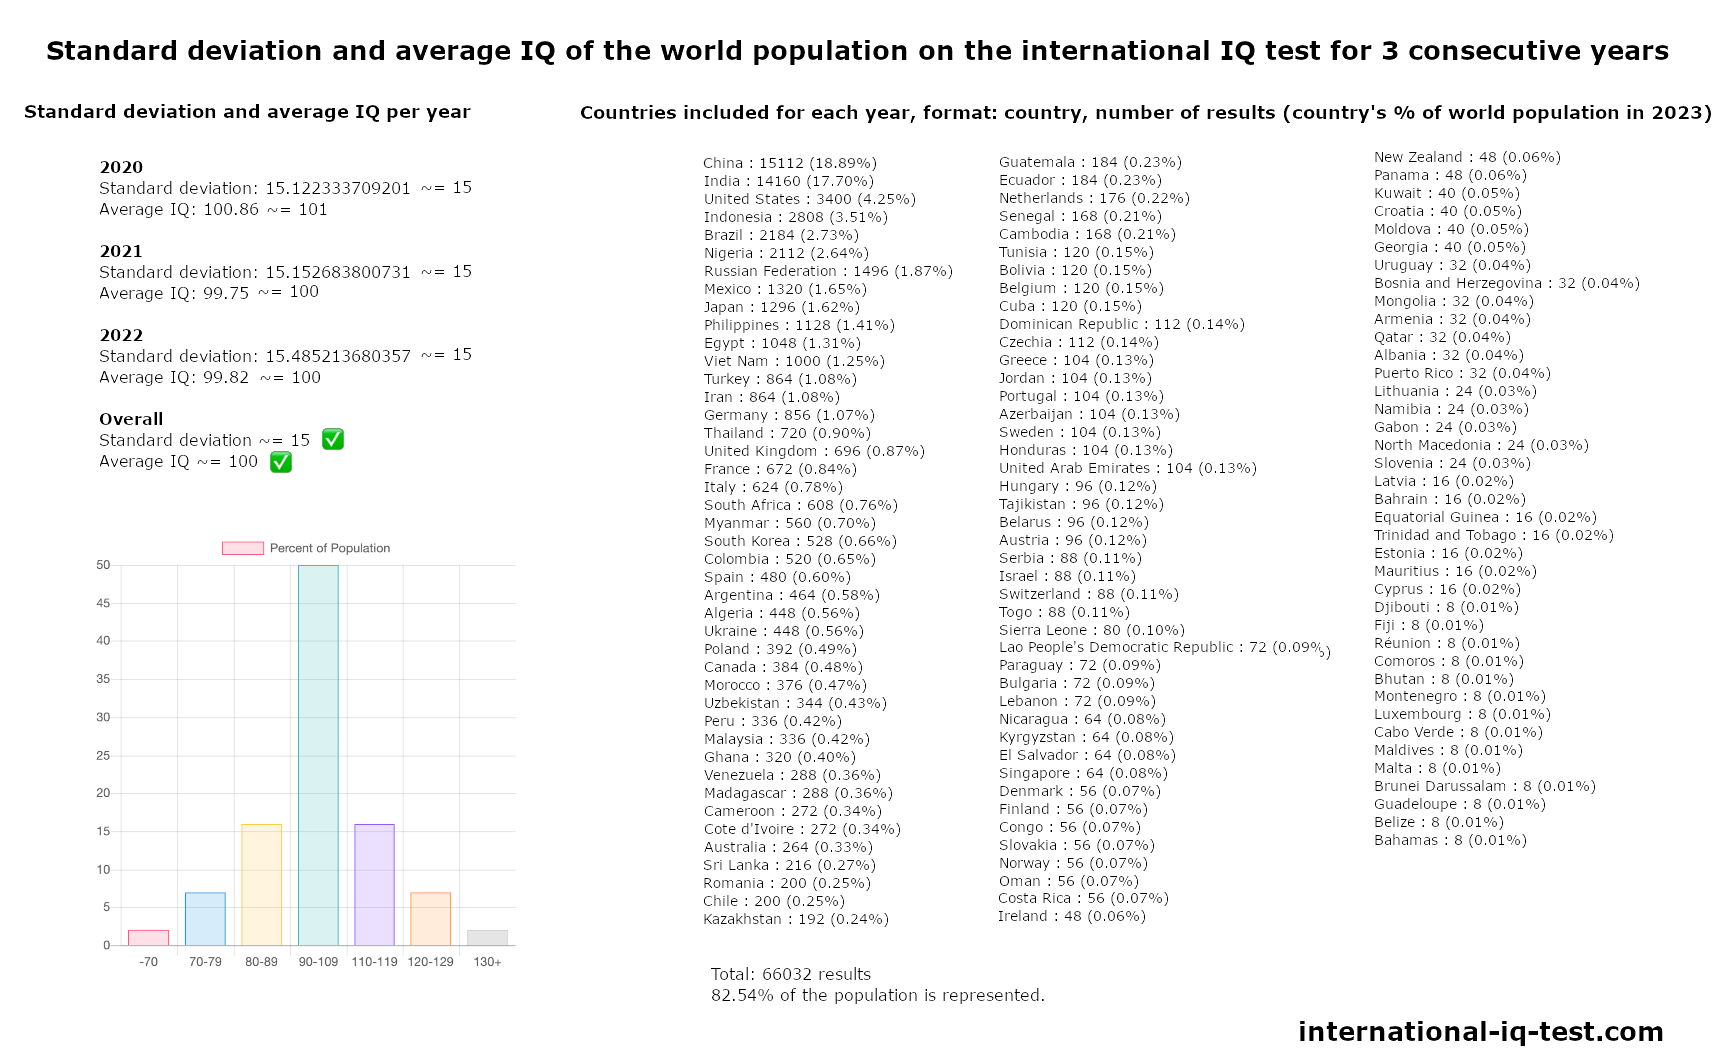 Desvio-padrão e QI médio da população mundial no teste internacional de QI dos anos 2020, 2021 e 2022